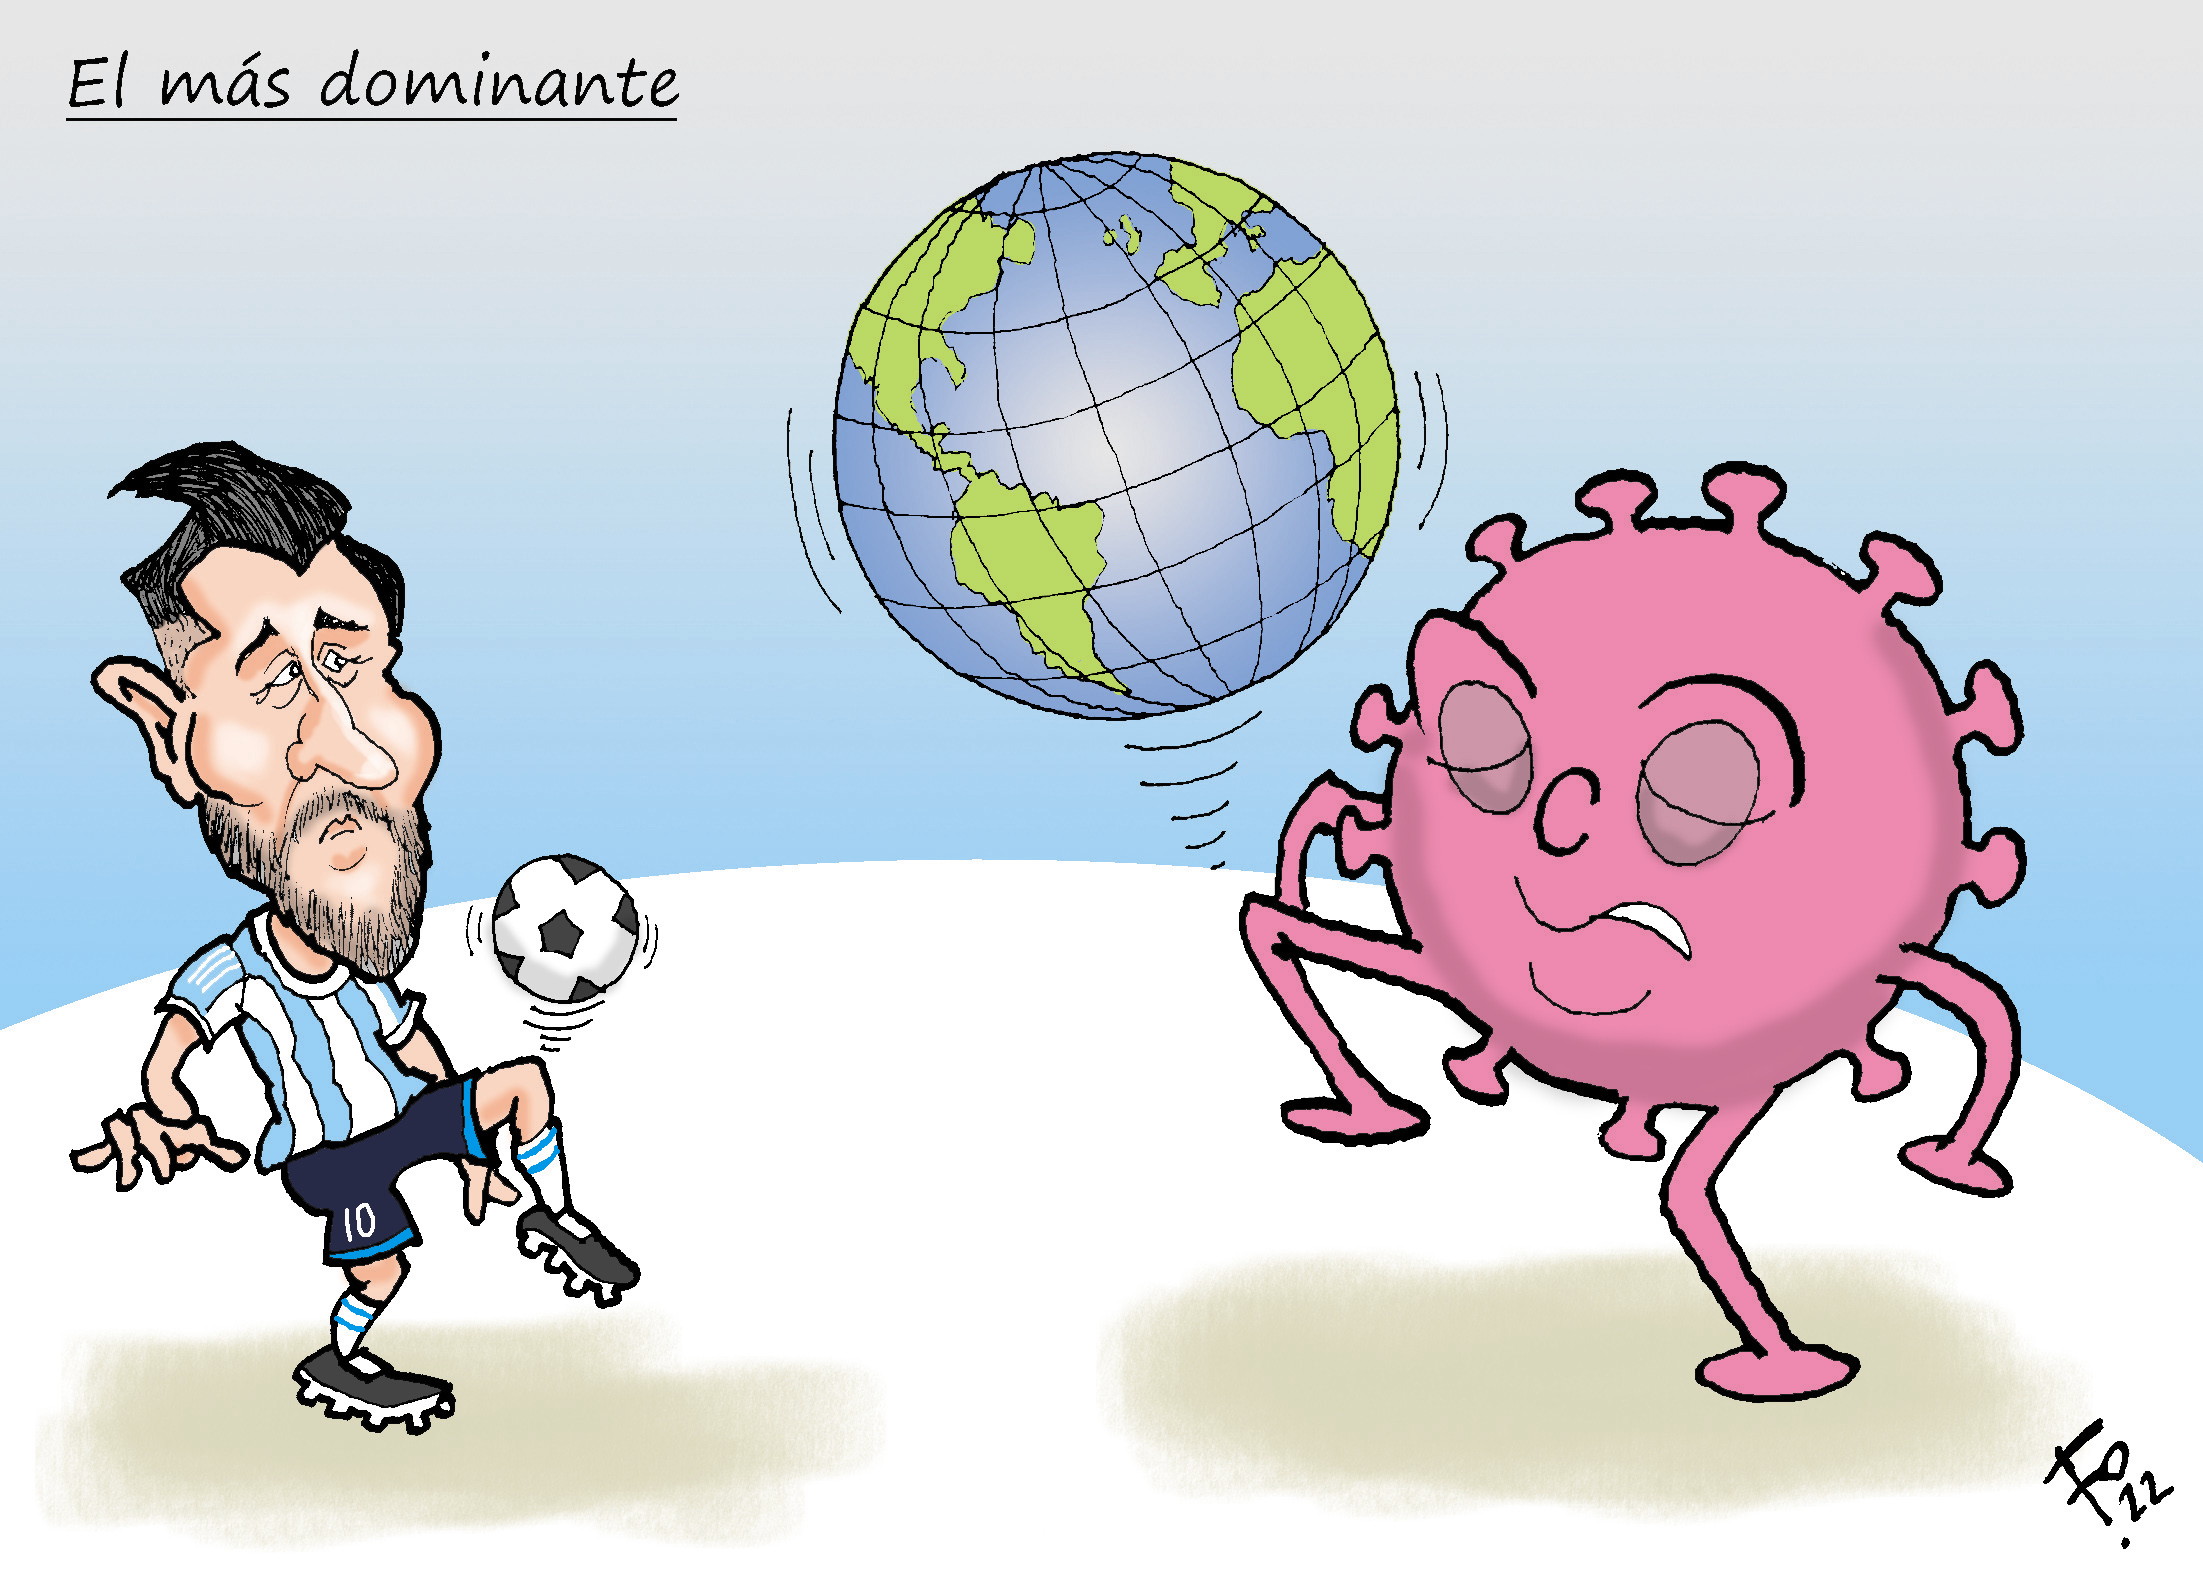 Personaje: Lionel Messi.